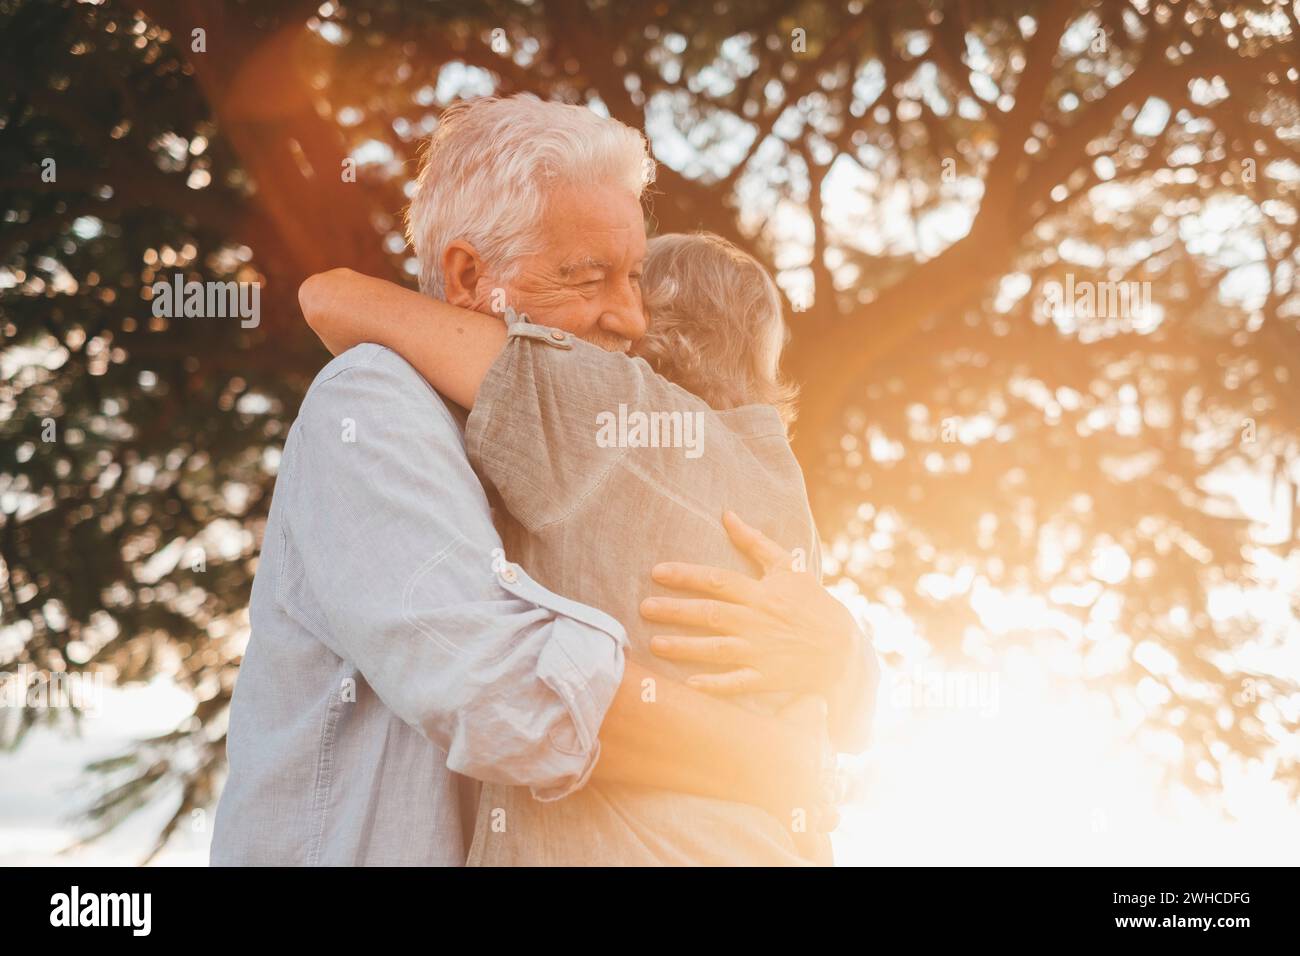 Kopfaufnahme Nahaufnahme Porträt glückliche grauhaarige Frau mittleren Alters, die sich an einen lächelnden älteren Ehemann kuschelt und einen zarten Moment im Park genießt. Ein liebevolles, altes Familienpaar, das sich umschließt, glücklich fühlt. Stockfoto